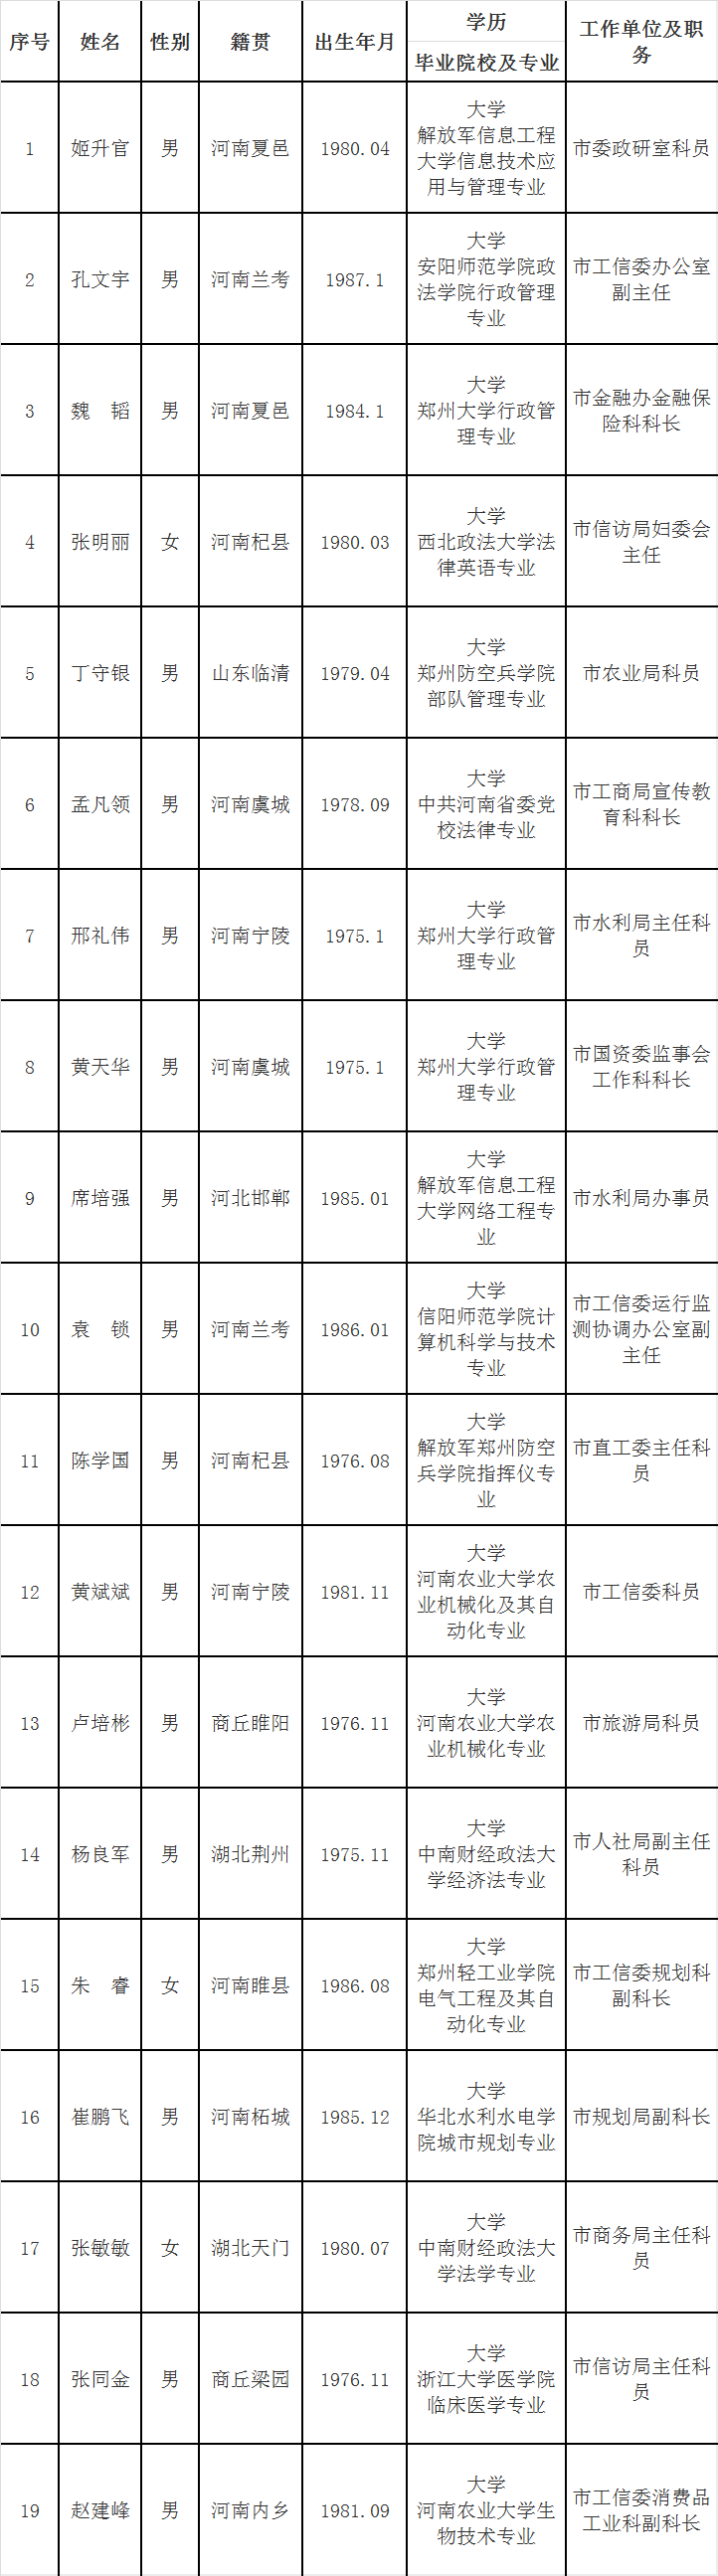 2015年河南商丘市委巡察工作机构遴选拟录用人选公示.png